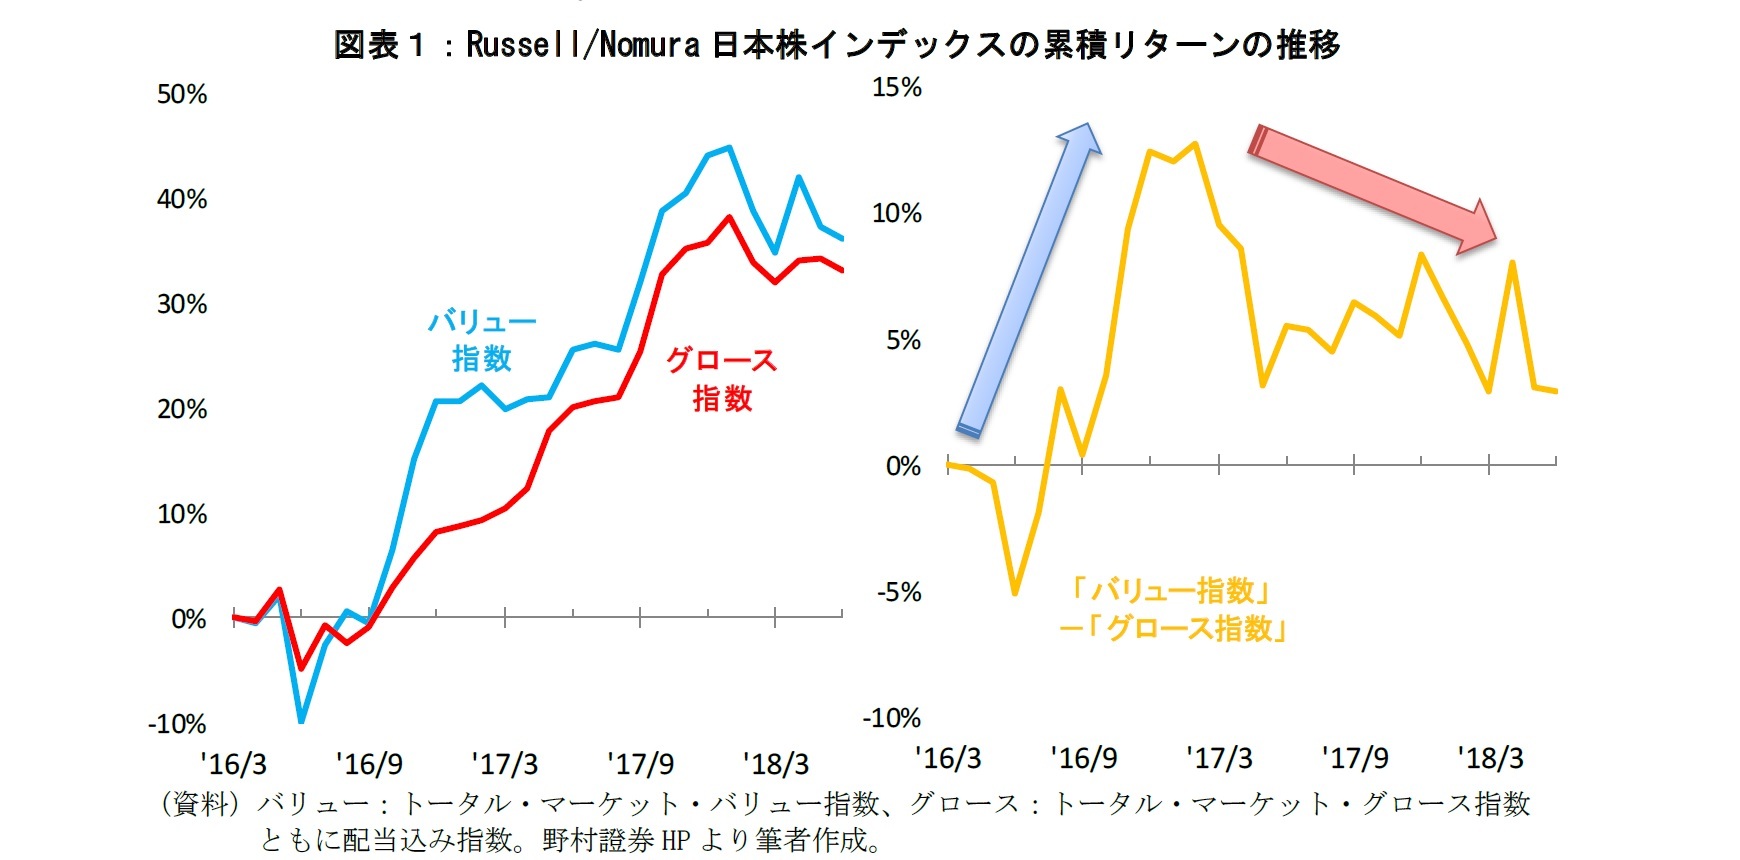 図表１：Russell/Nomura 日本株インデックスの累積リターンの推移